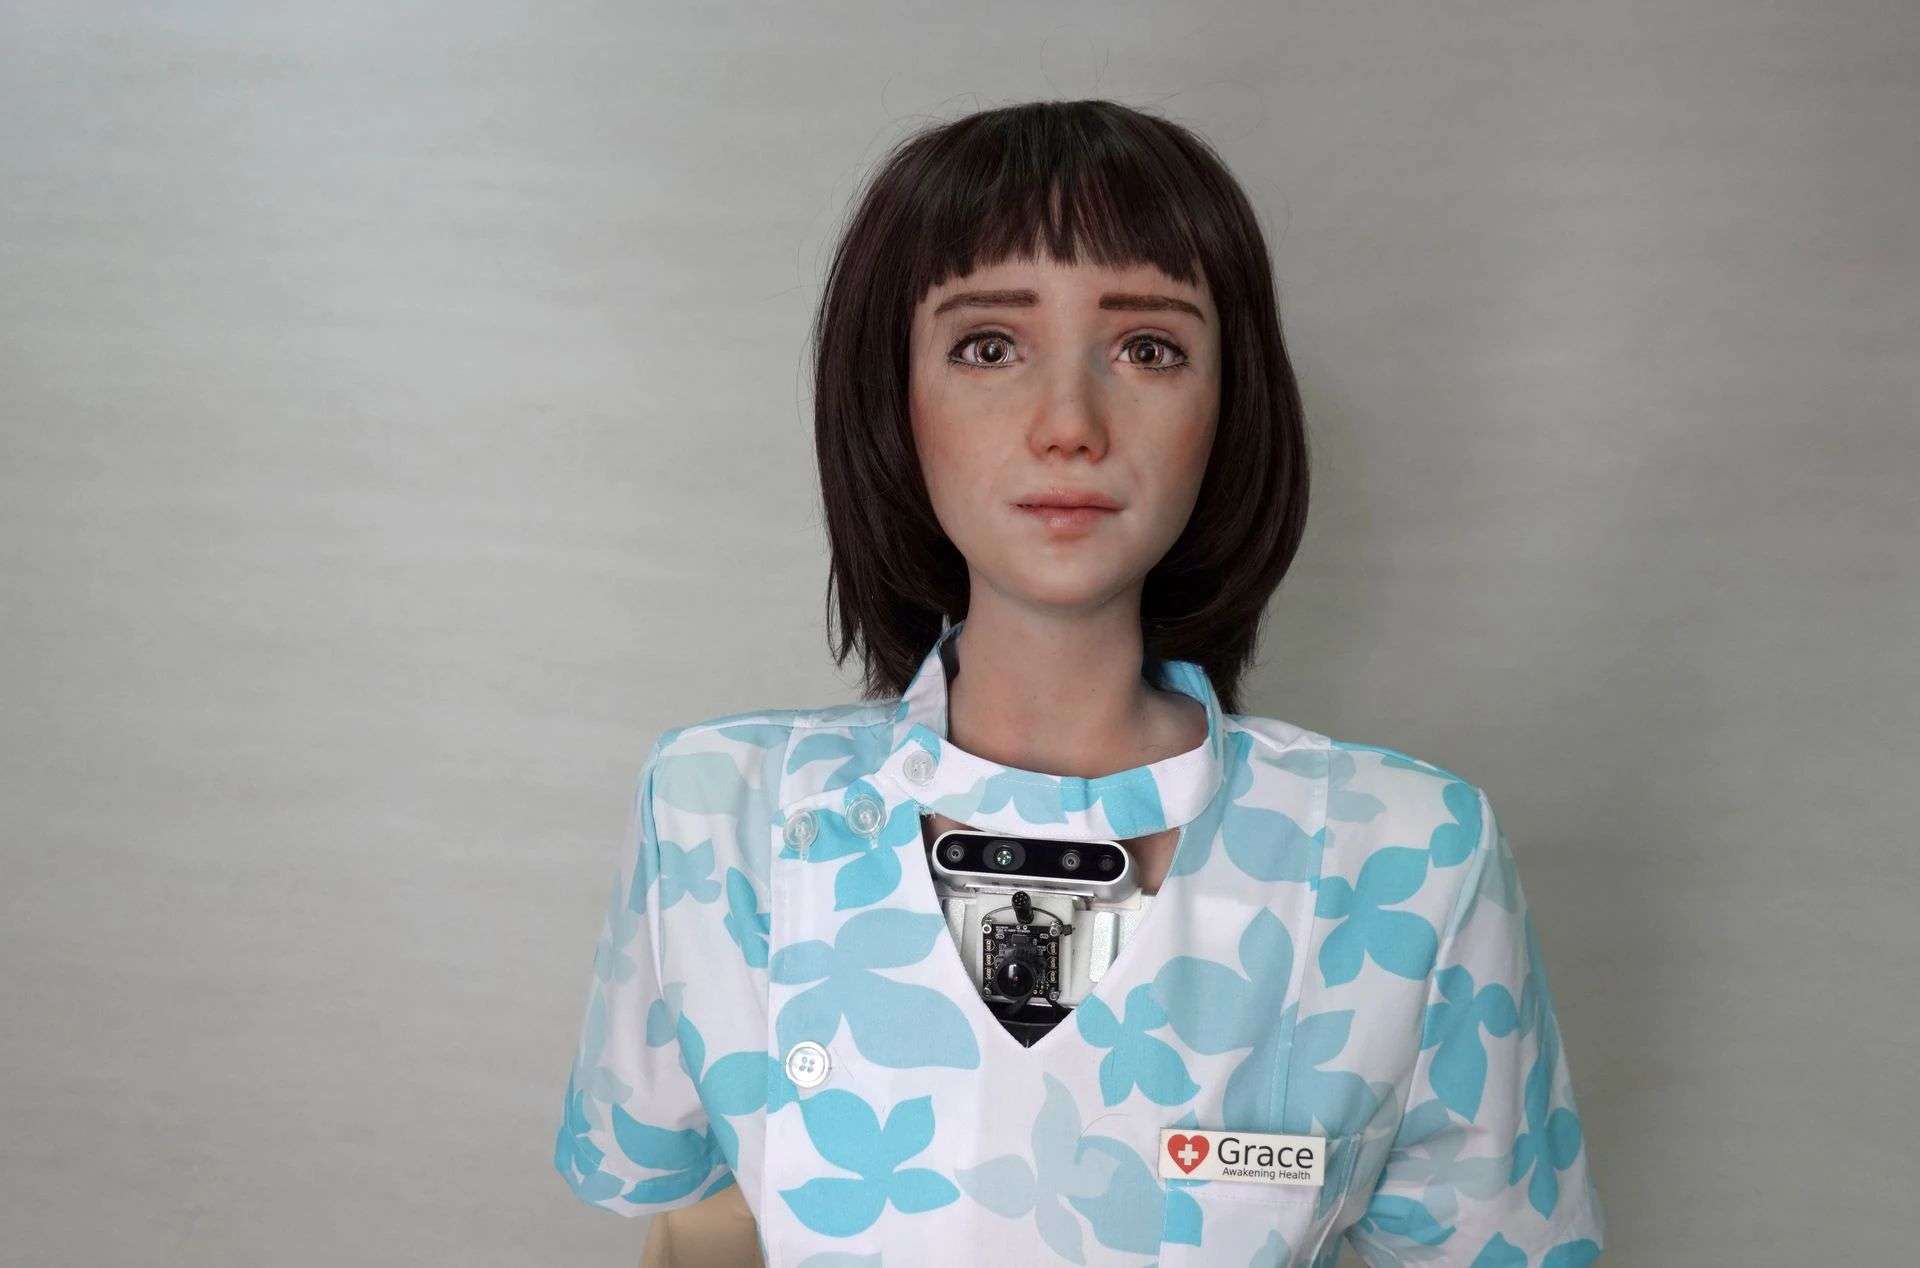 सोफिया रोबोट बनाने वाली कंपनी अब लाई 'नर्स रोबोट'